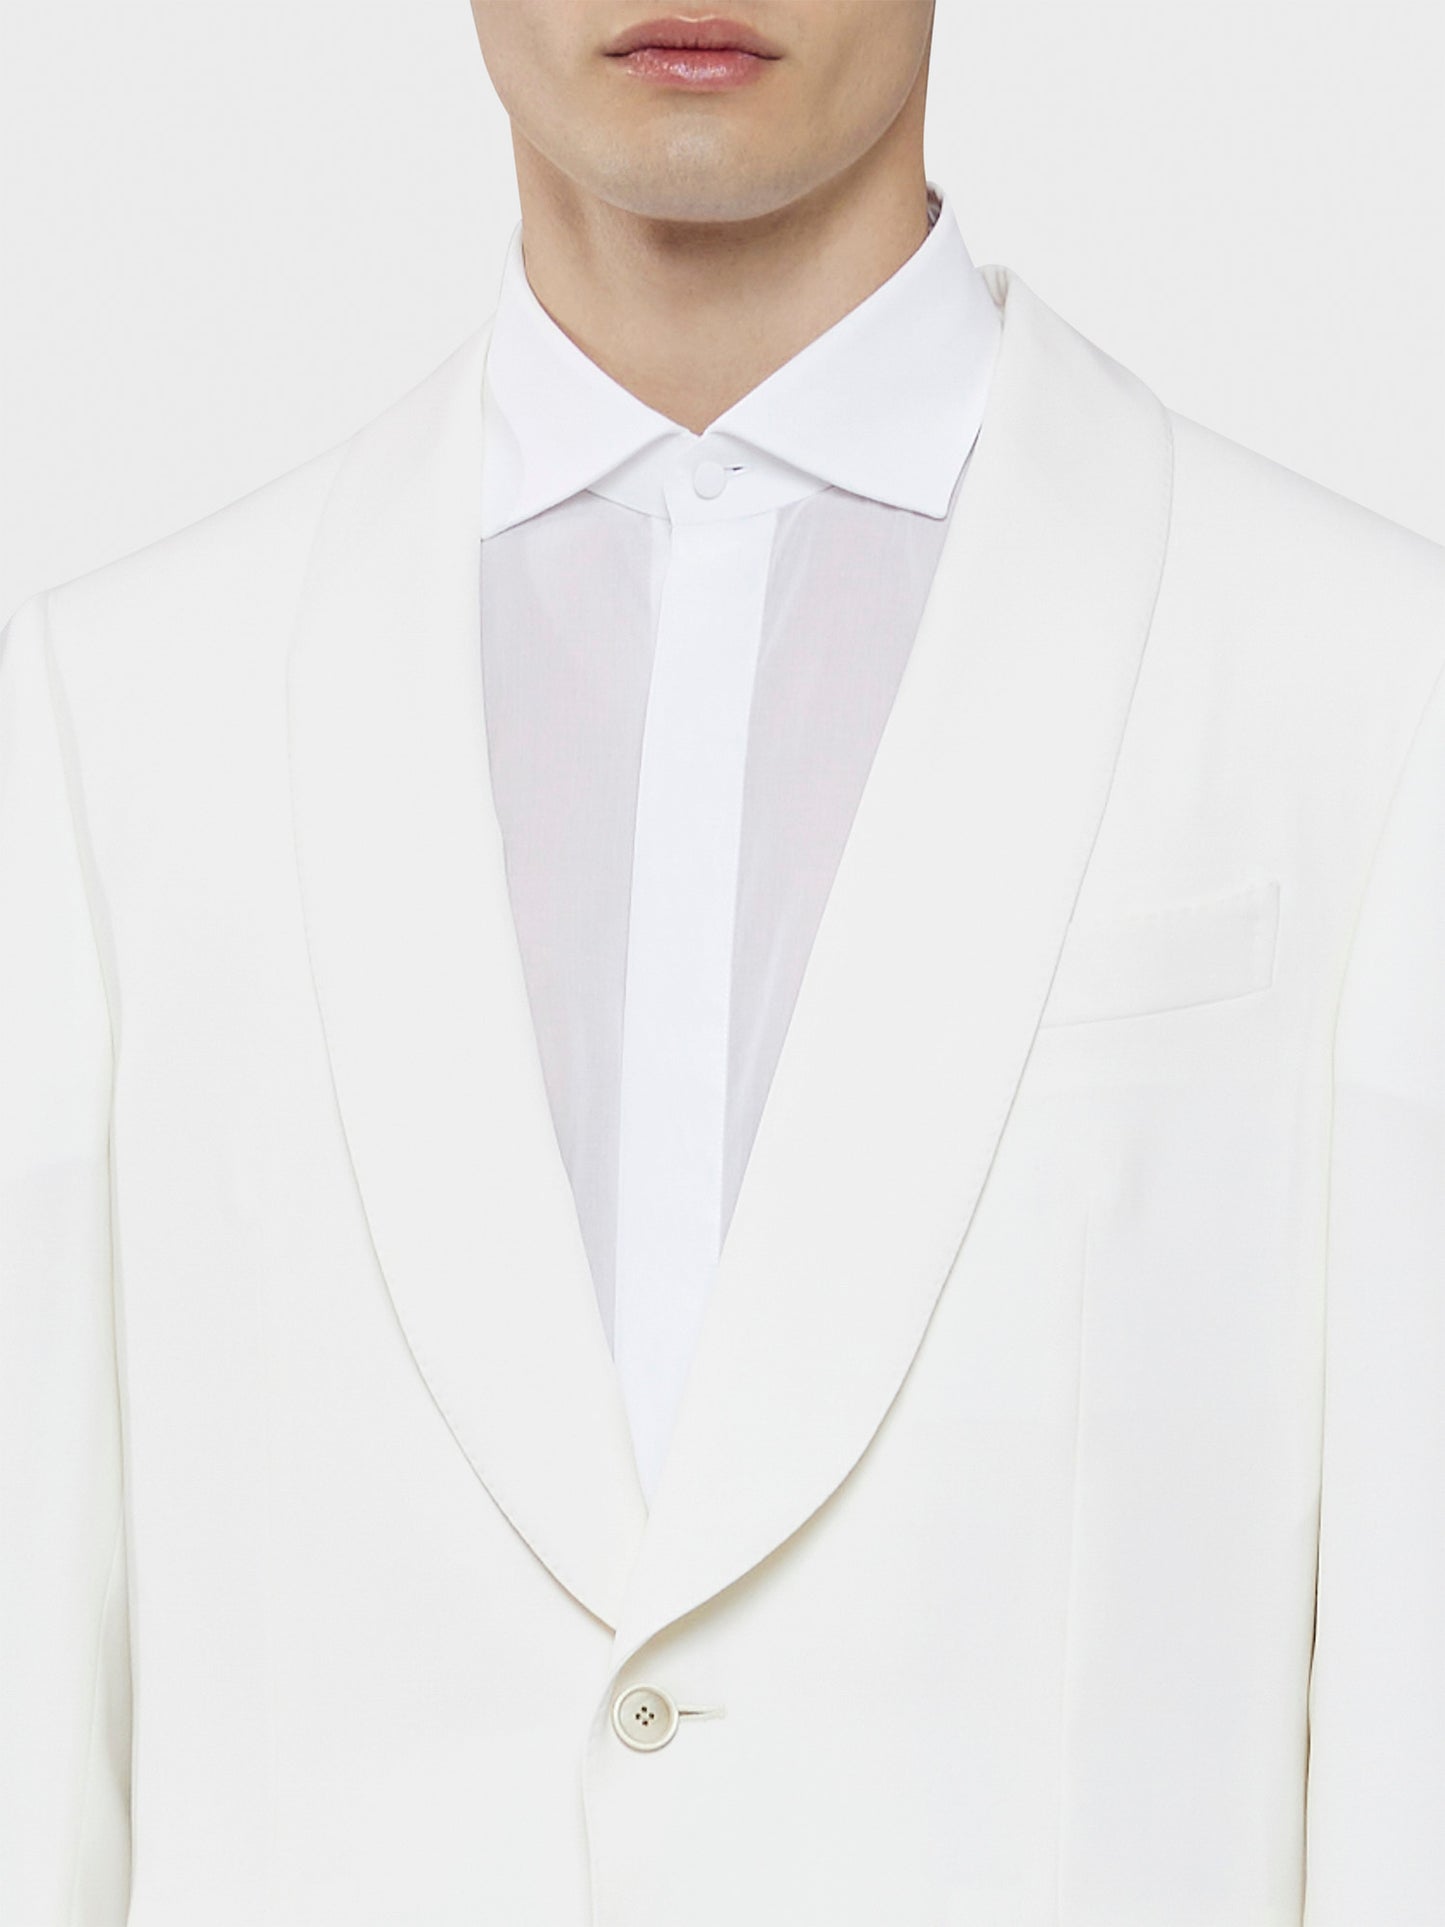 Caruso Menswear Abbigliamento Uomo Giacca Norma foderata in lana bianco drop 7R dettaglio